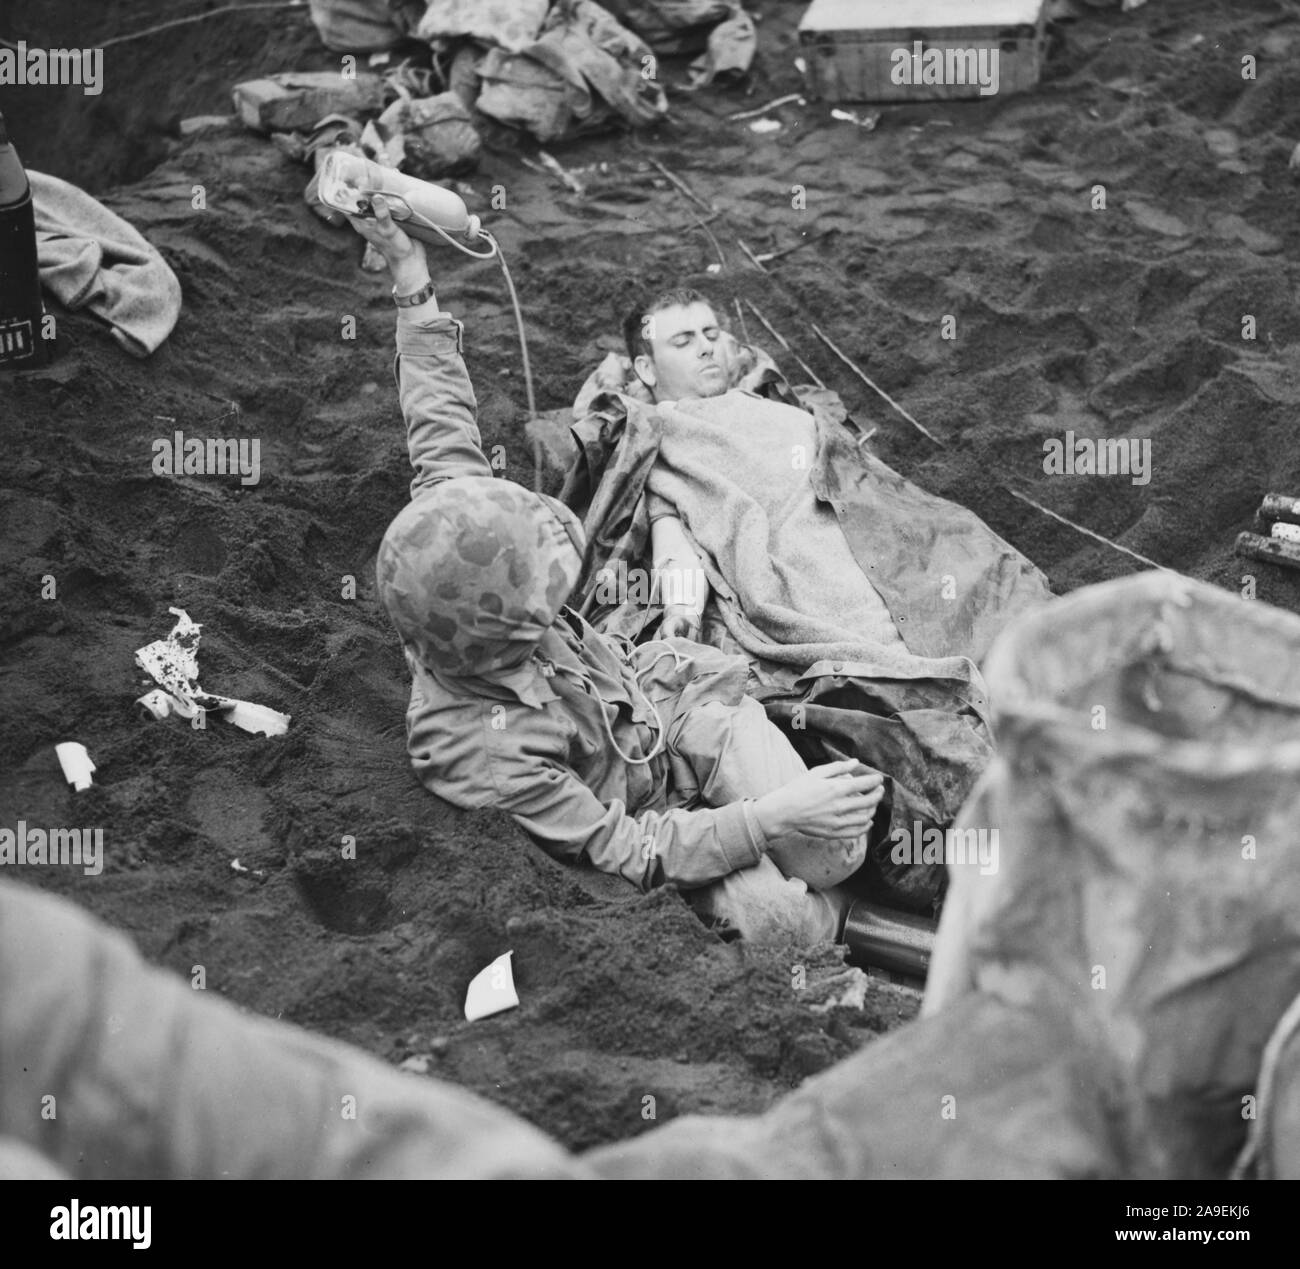 Un oficial de la naval adminsiters plasma sanguíneo a un soldado herido en Iwo Jima Foto de stock